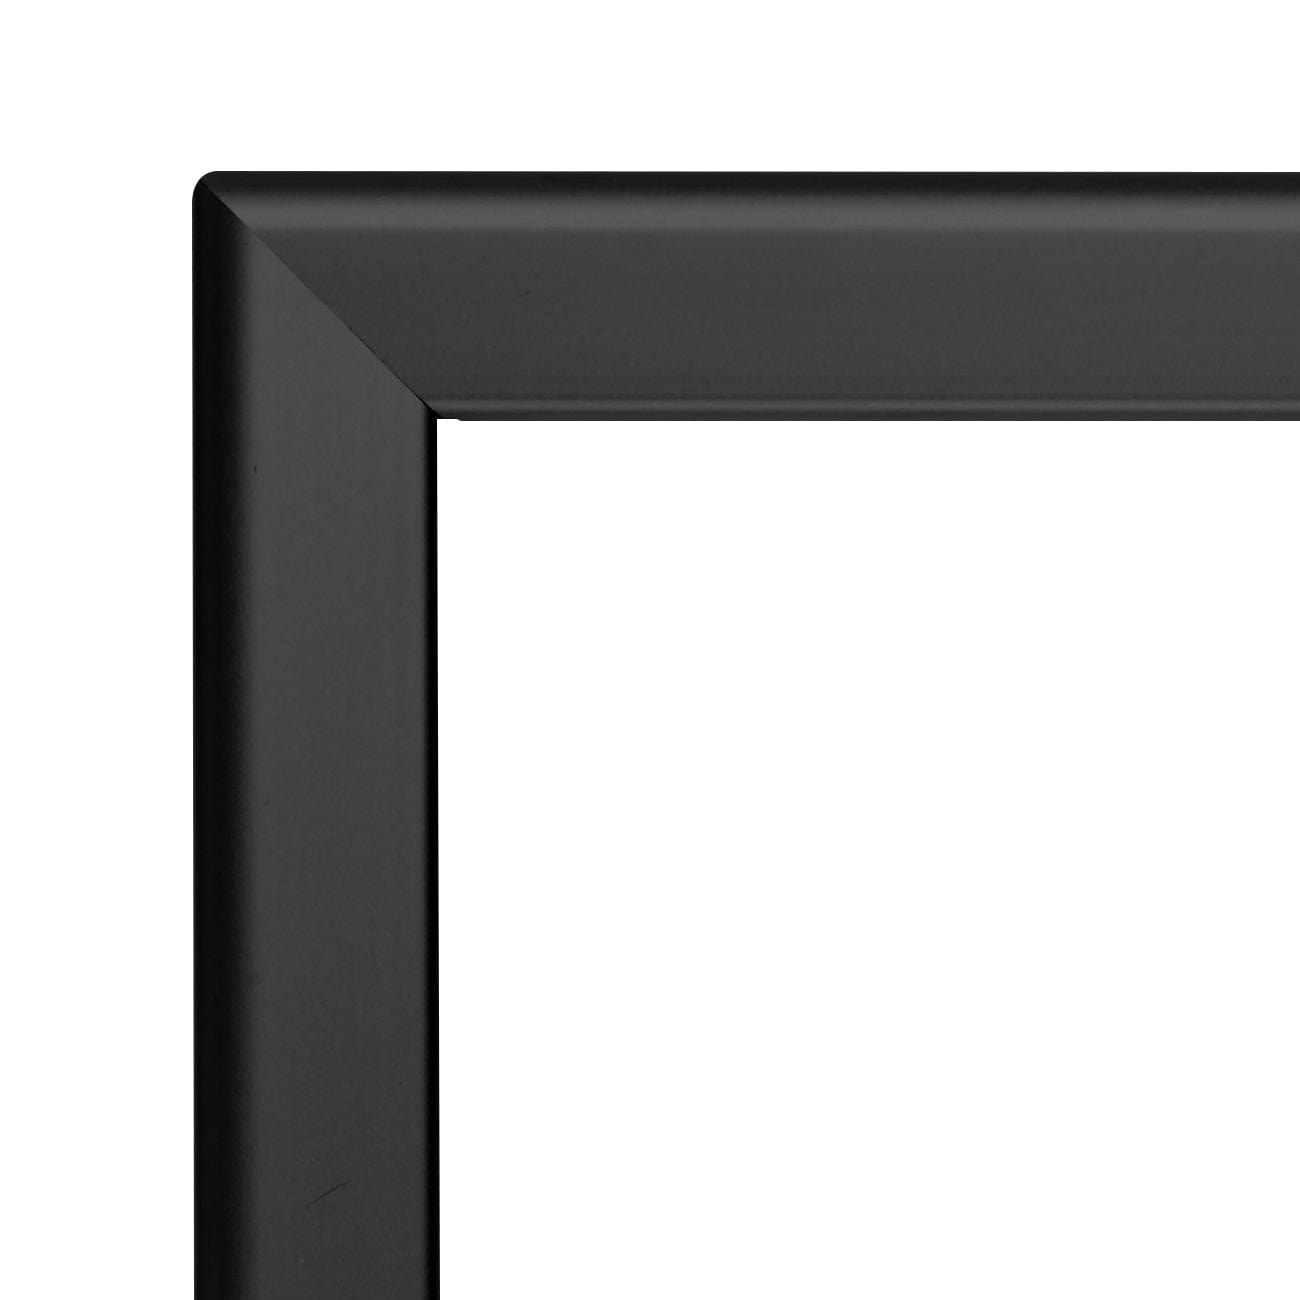 16x20 Black TRADEframe Snap Frame - 1.25" Profile - Snap Frames Direct